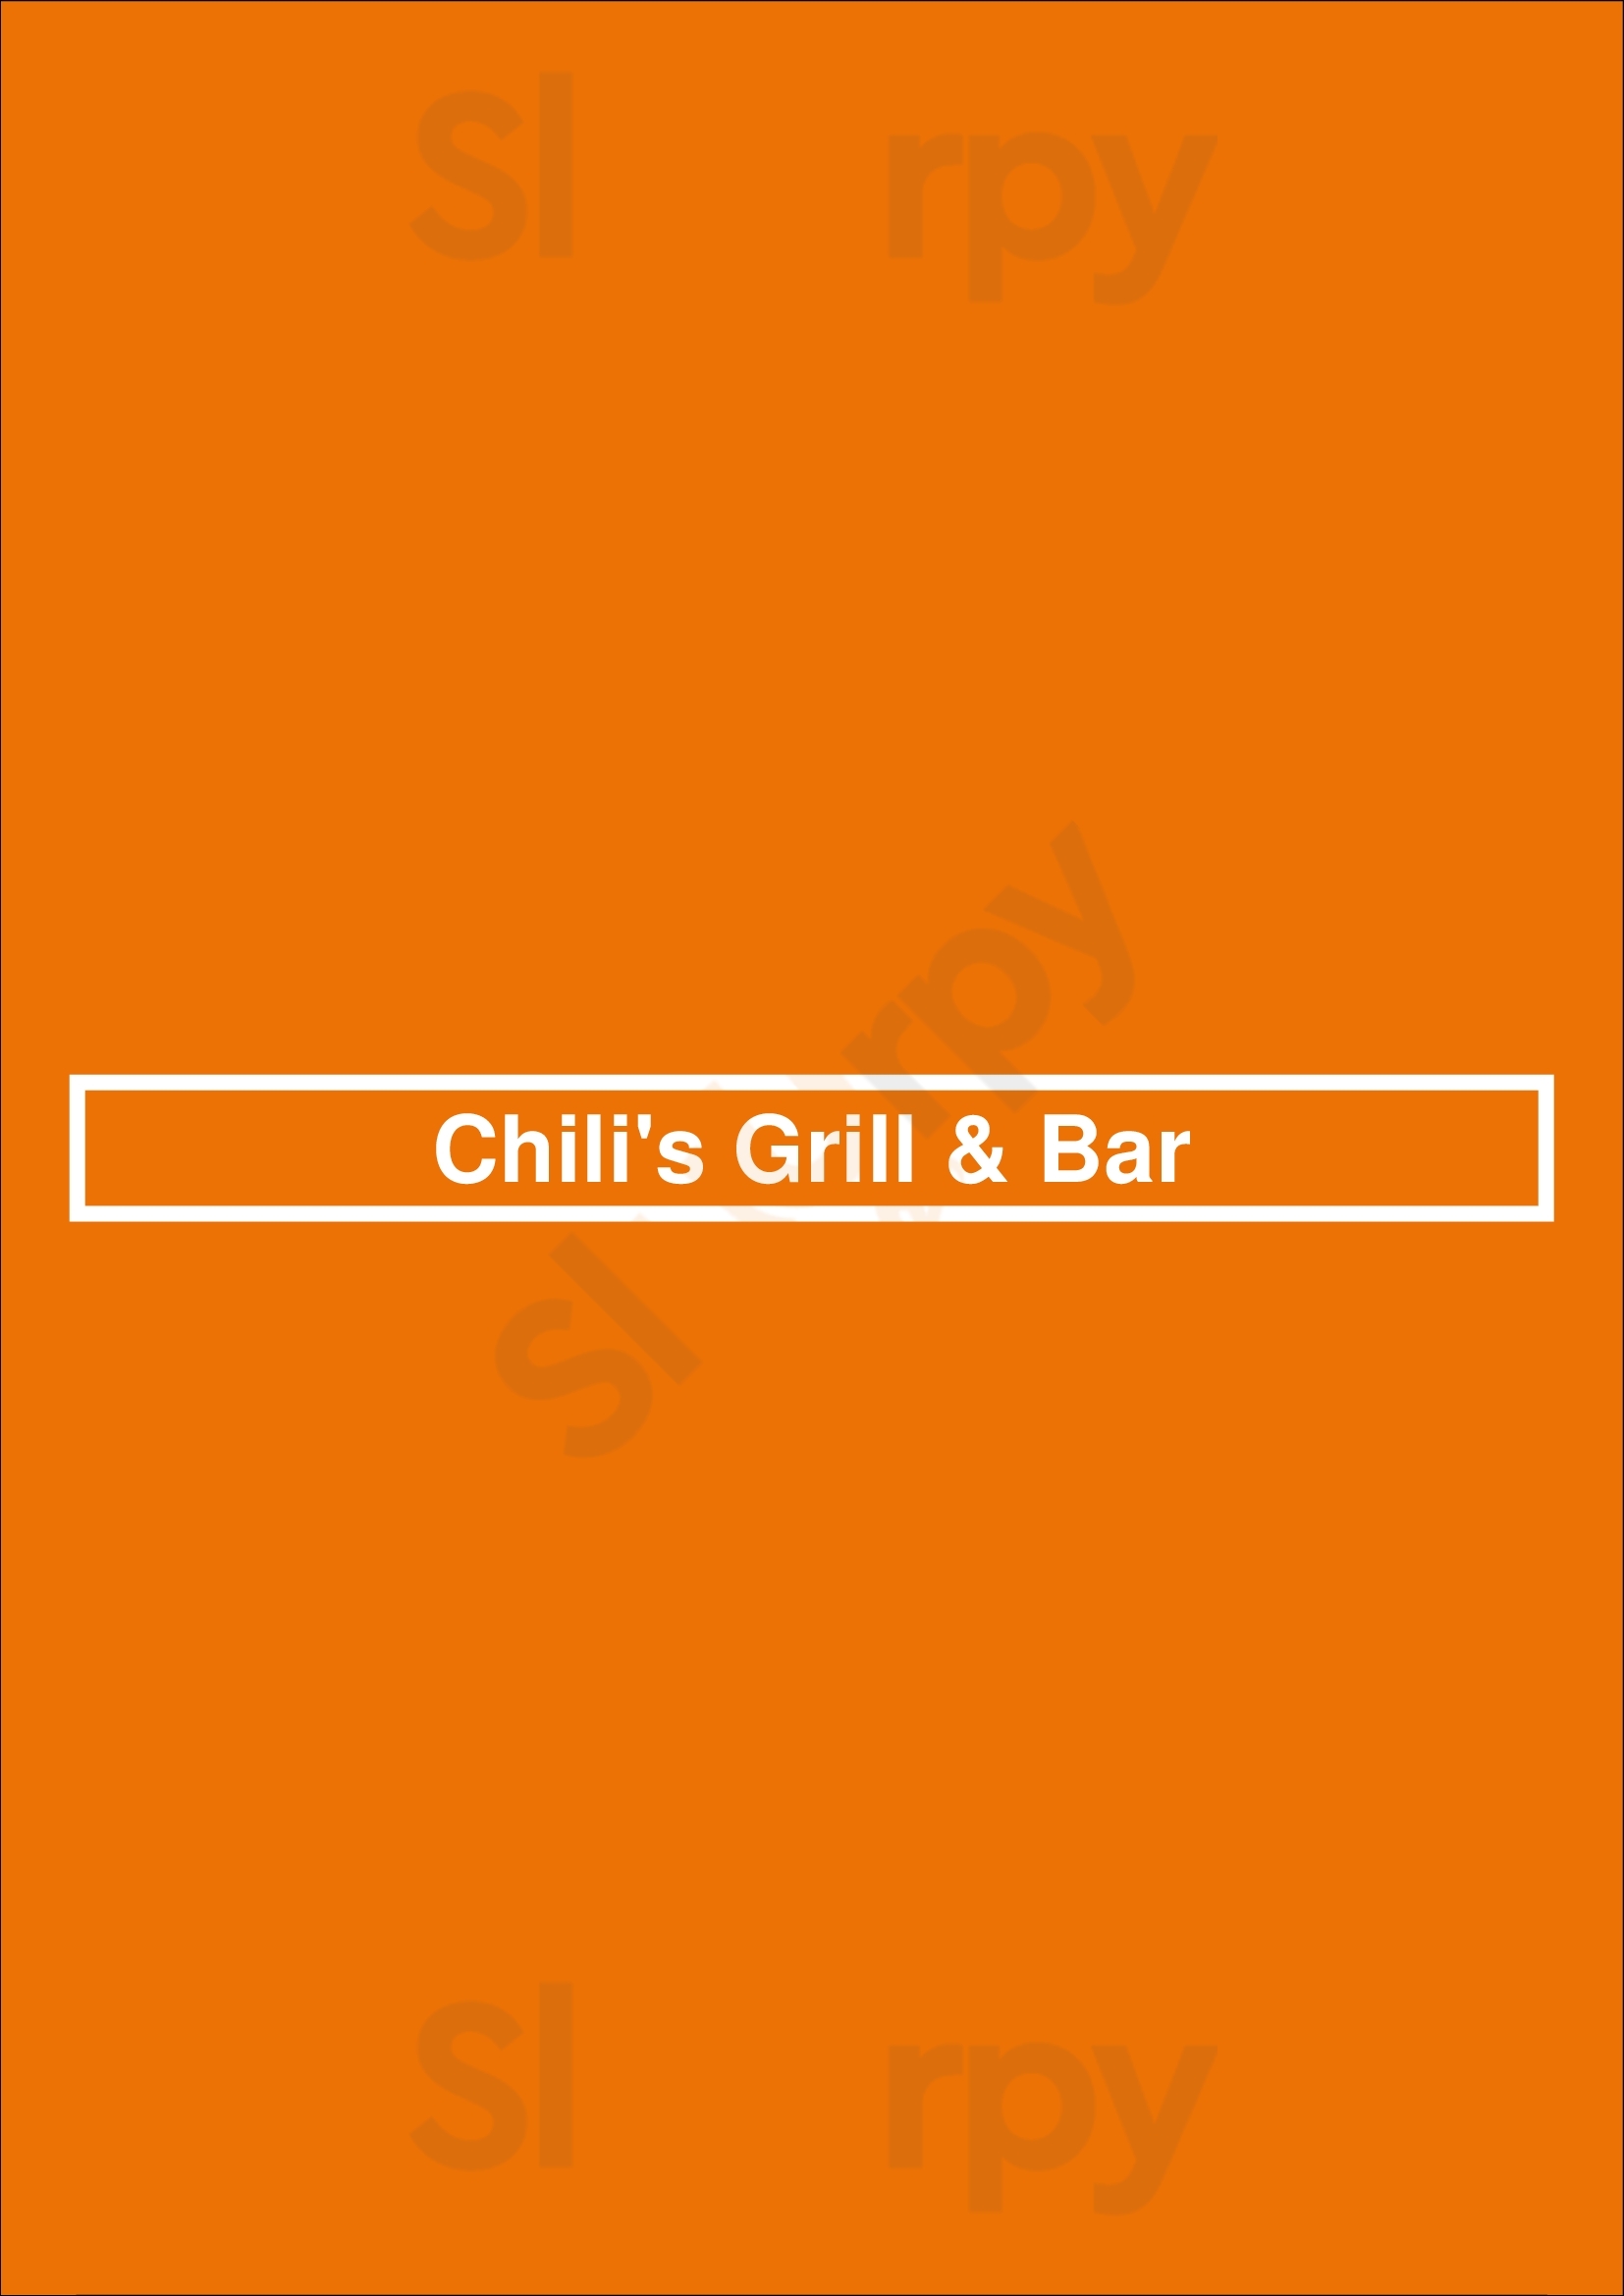 Chili's Grill & Bar Salem Menu - 1